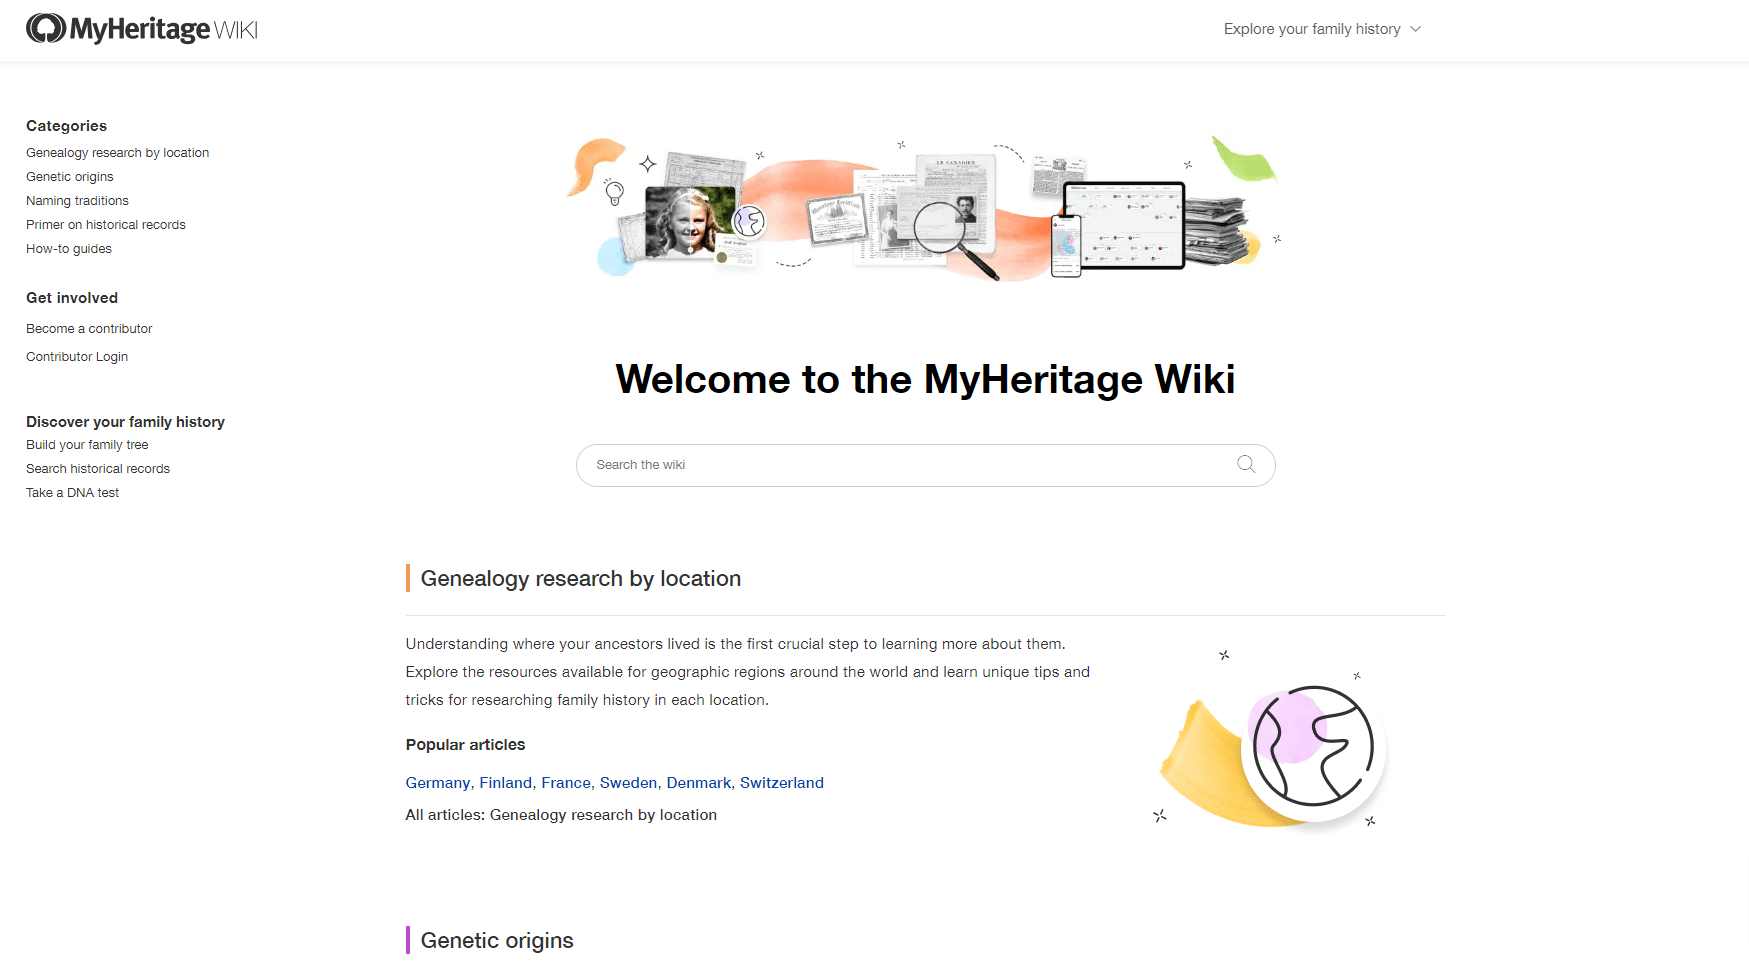 The MyHeritage Wiki homepage